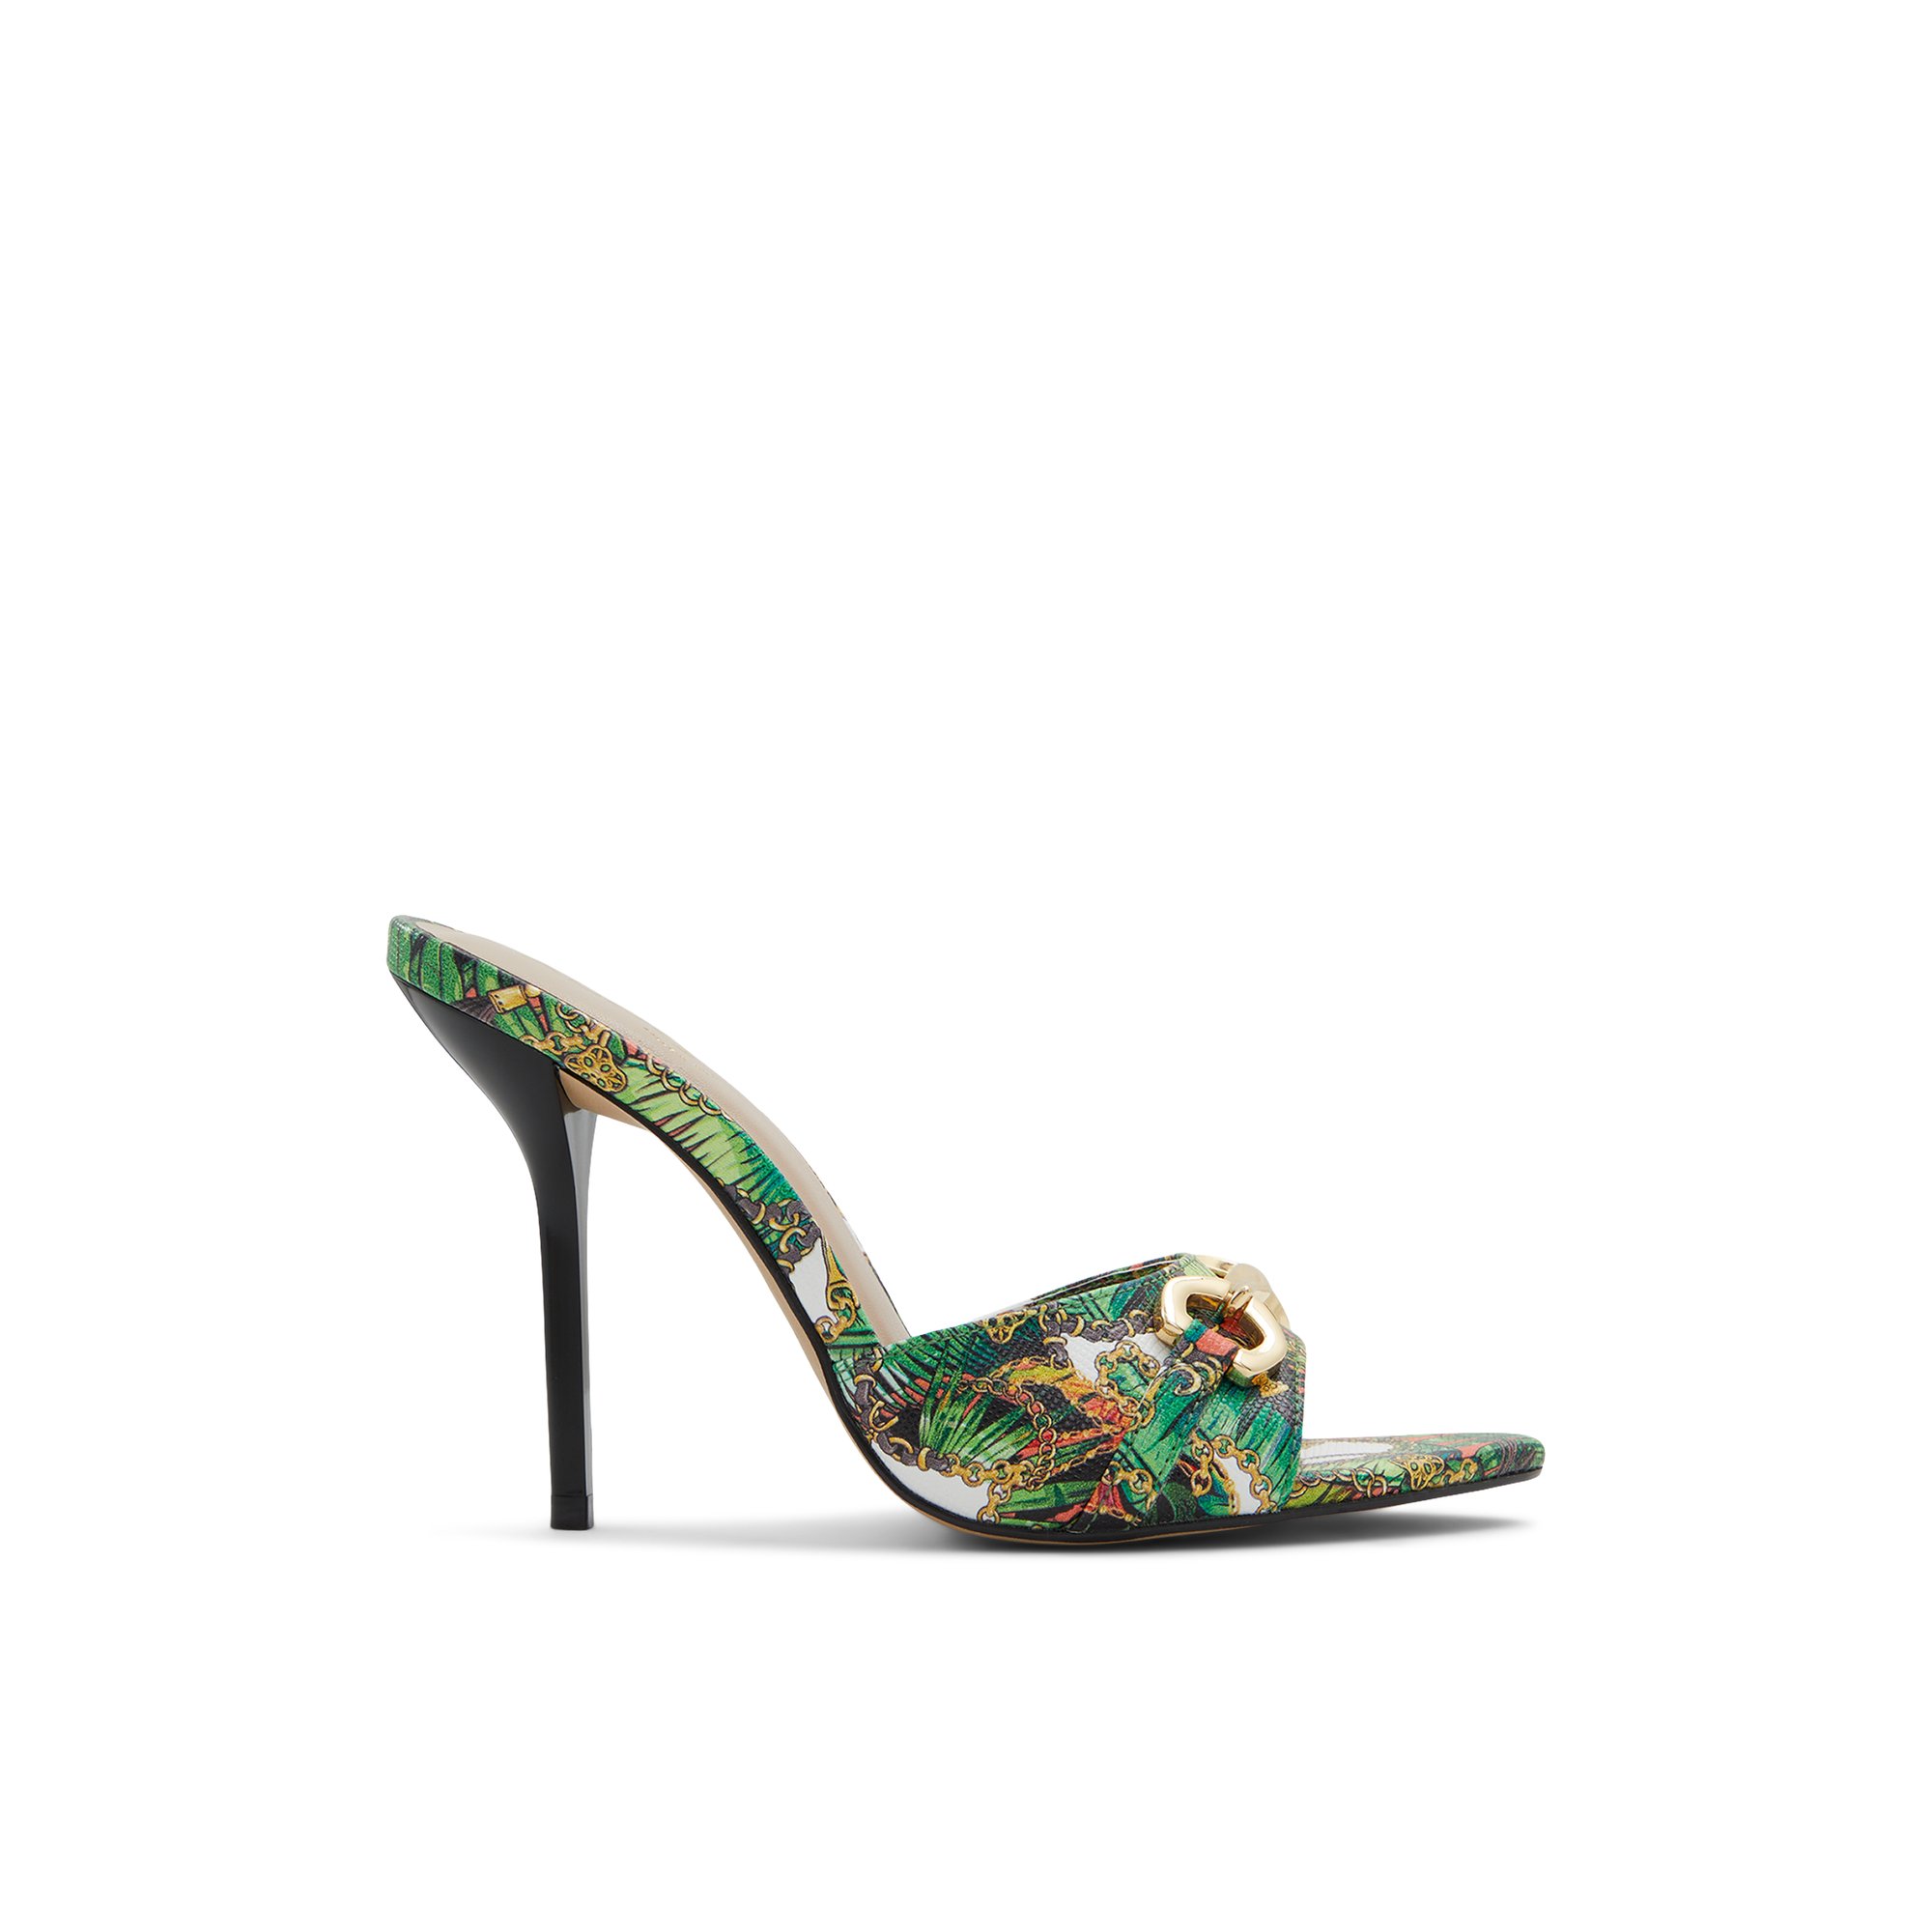 ALDO Edoassi - Women's Heeled Mules Sandals - Multicolor Epi